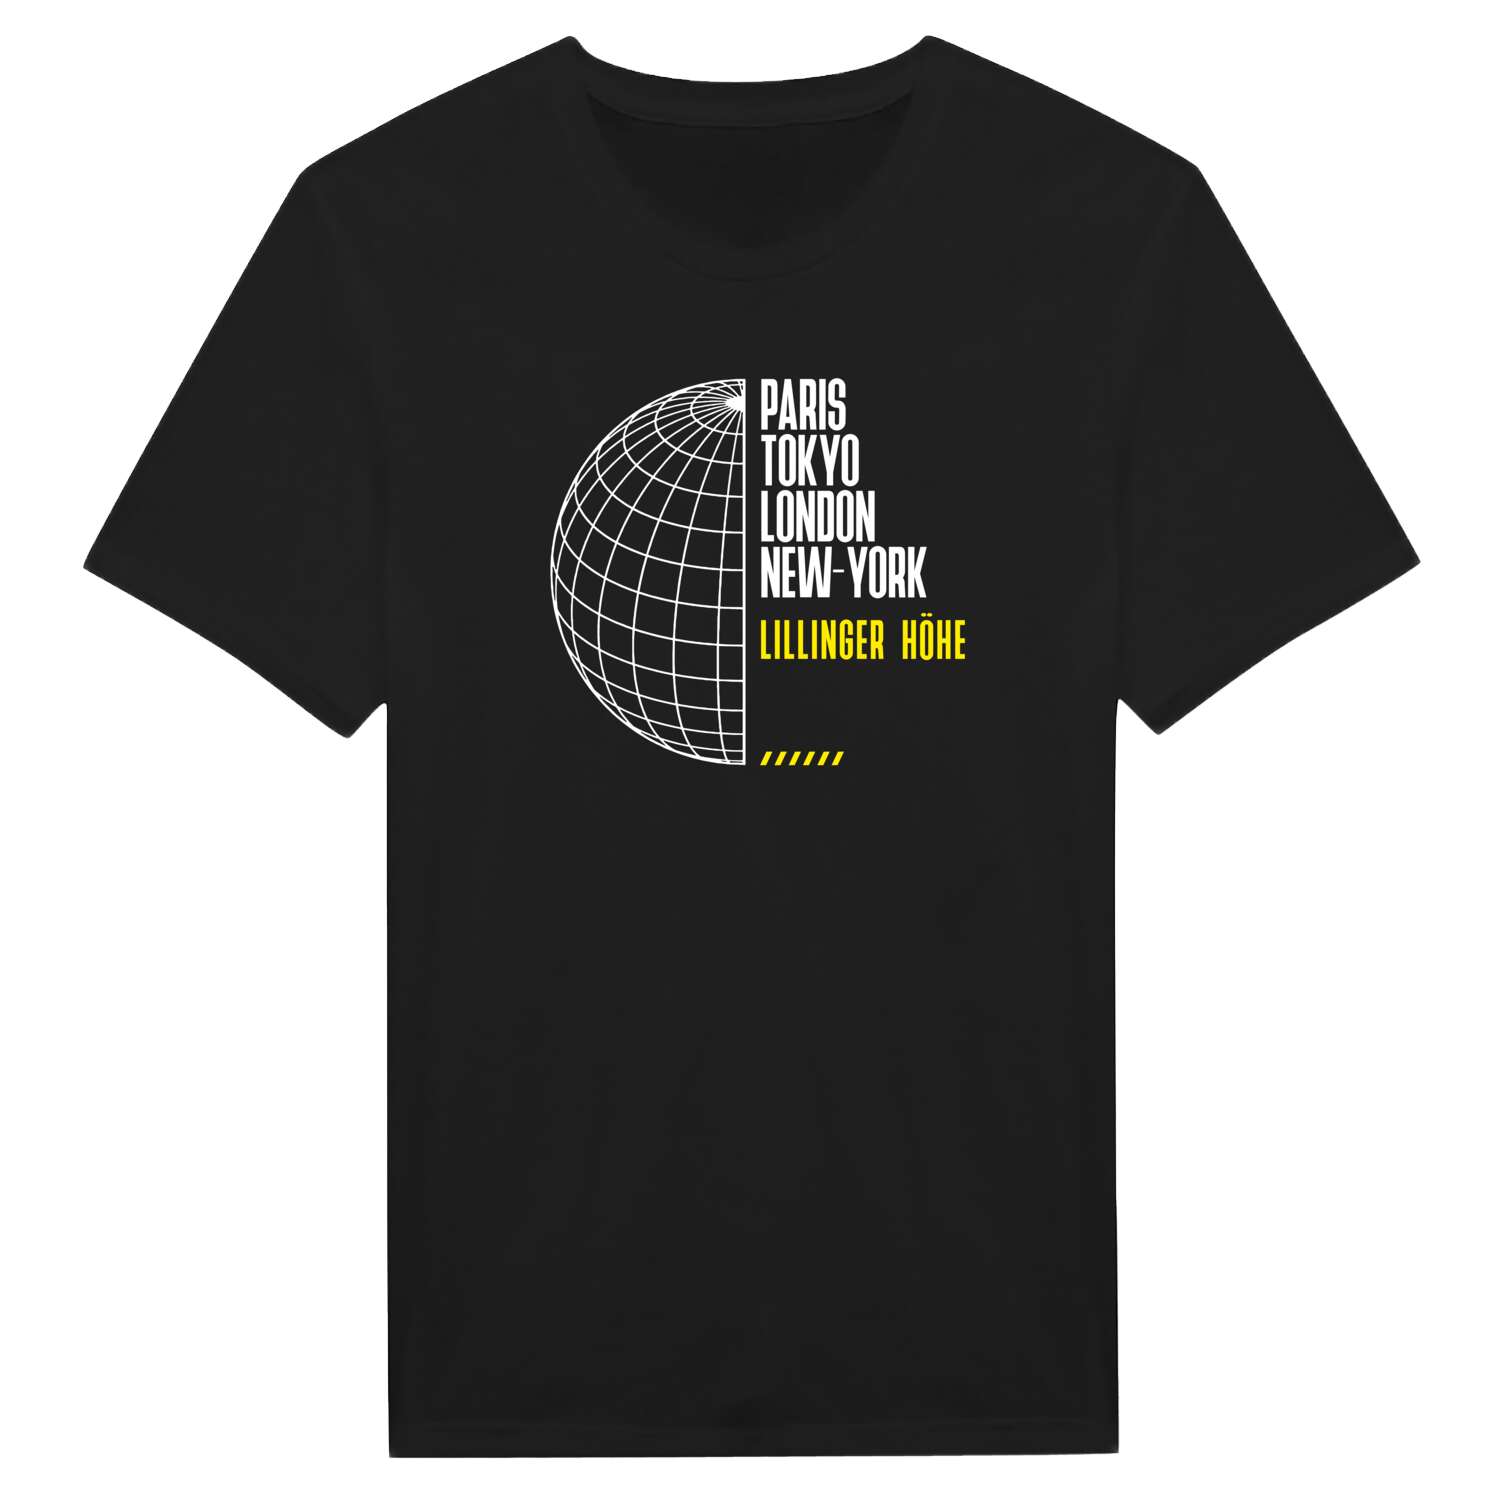 Lillinger Höhe T-Shirt »Paris Tokyo London«